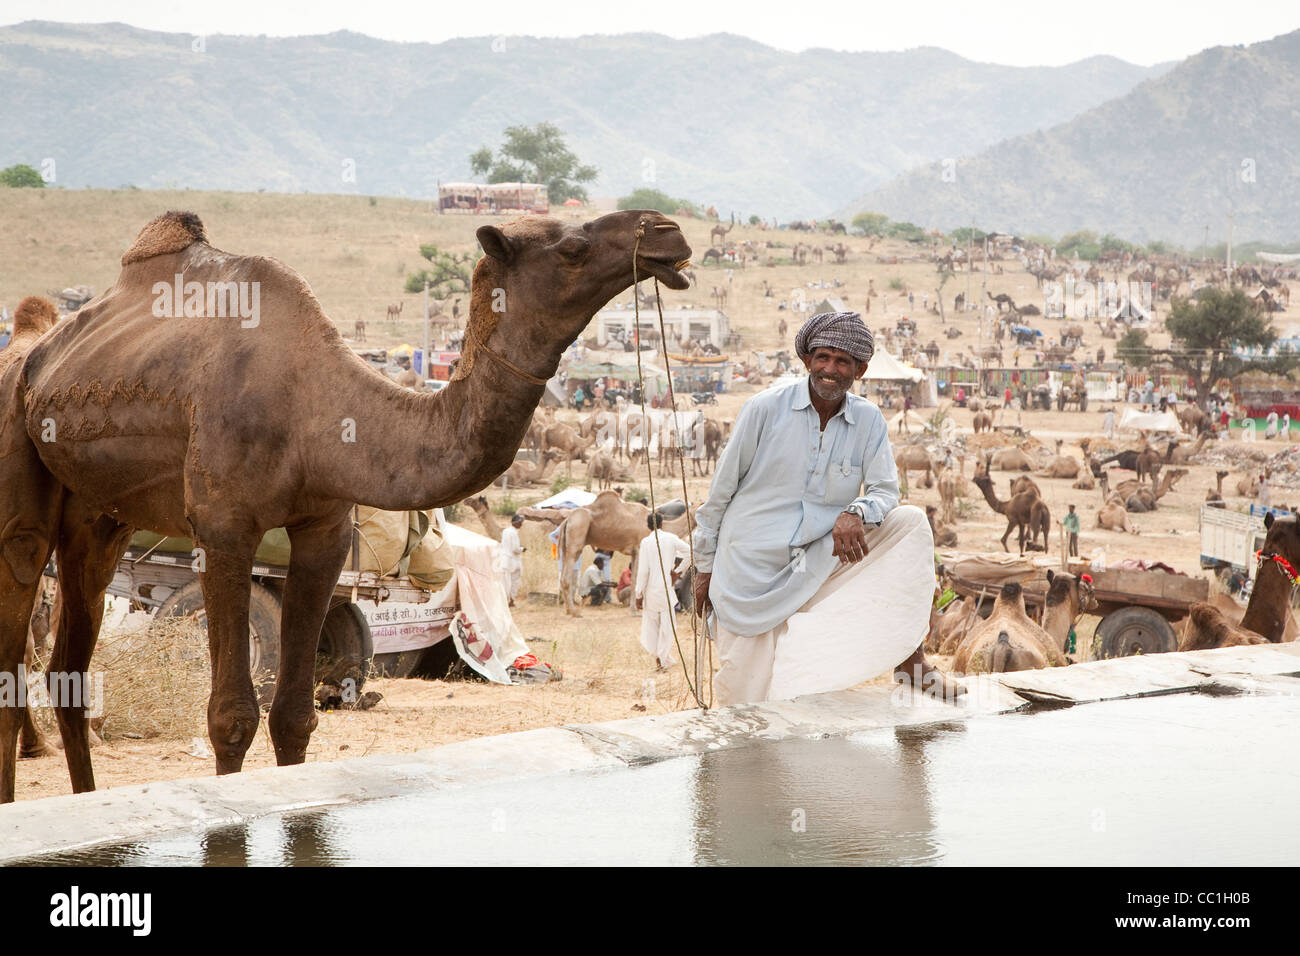 Herder avec son chameau à la foire de Pushkar - Rajasthan, Inde Banque D'Images